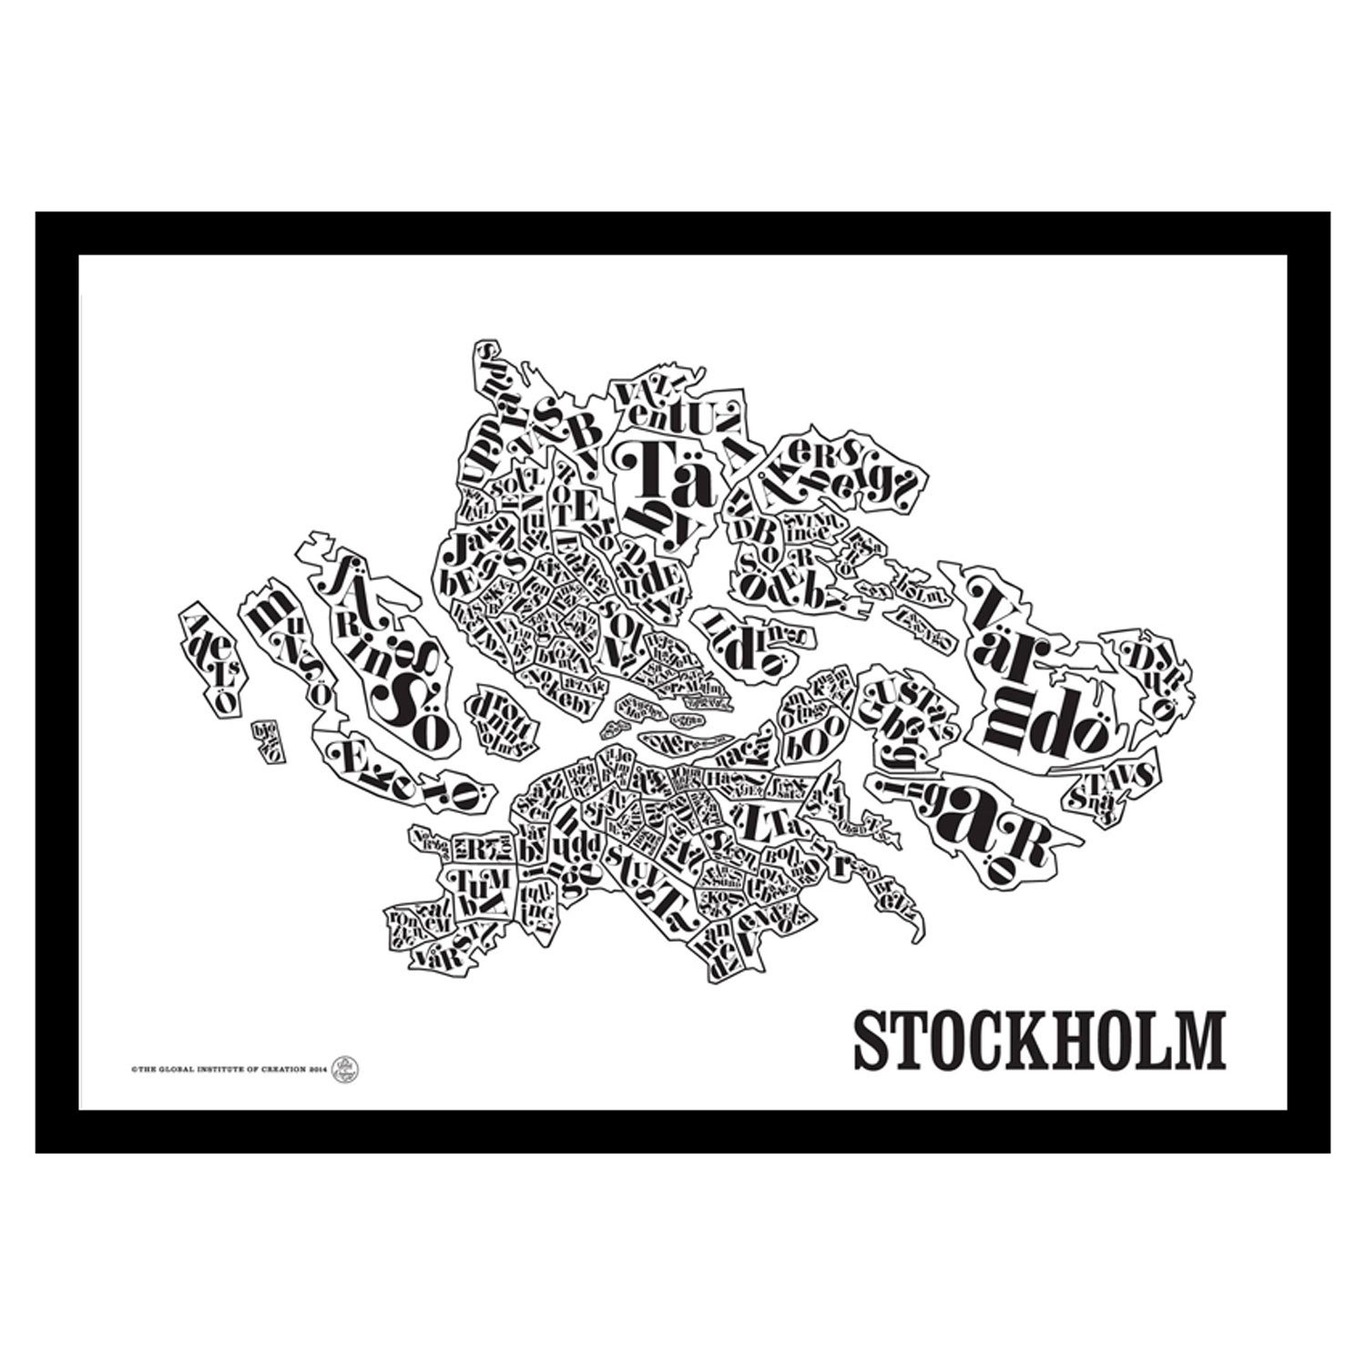 Stockholmskart Poster